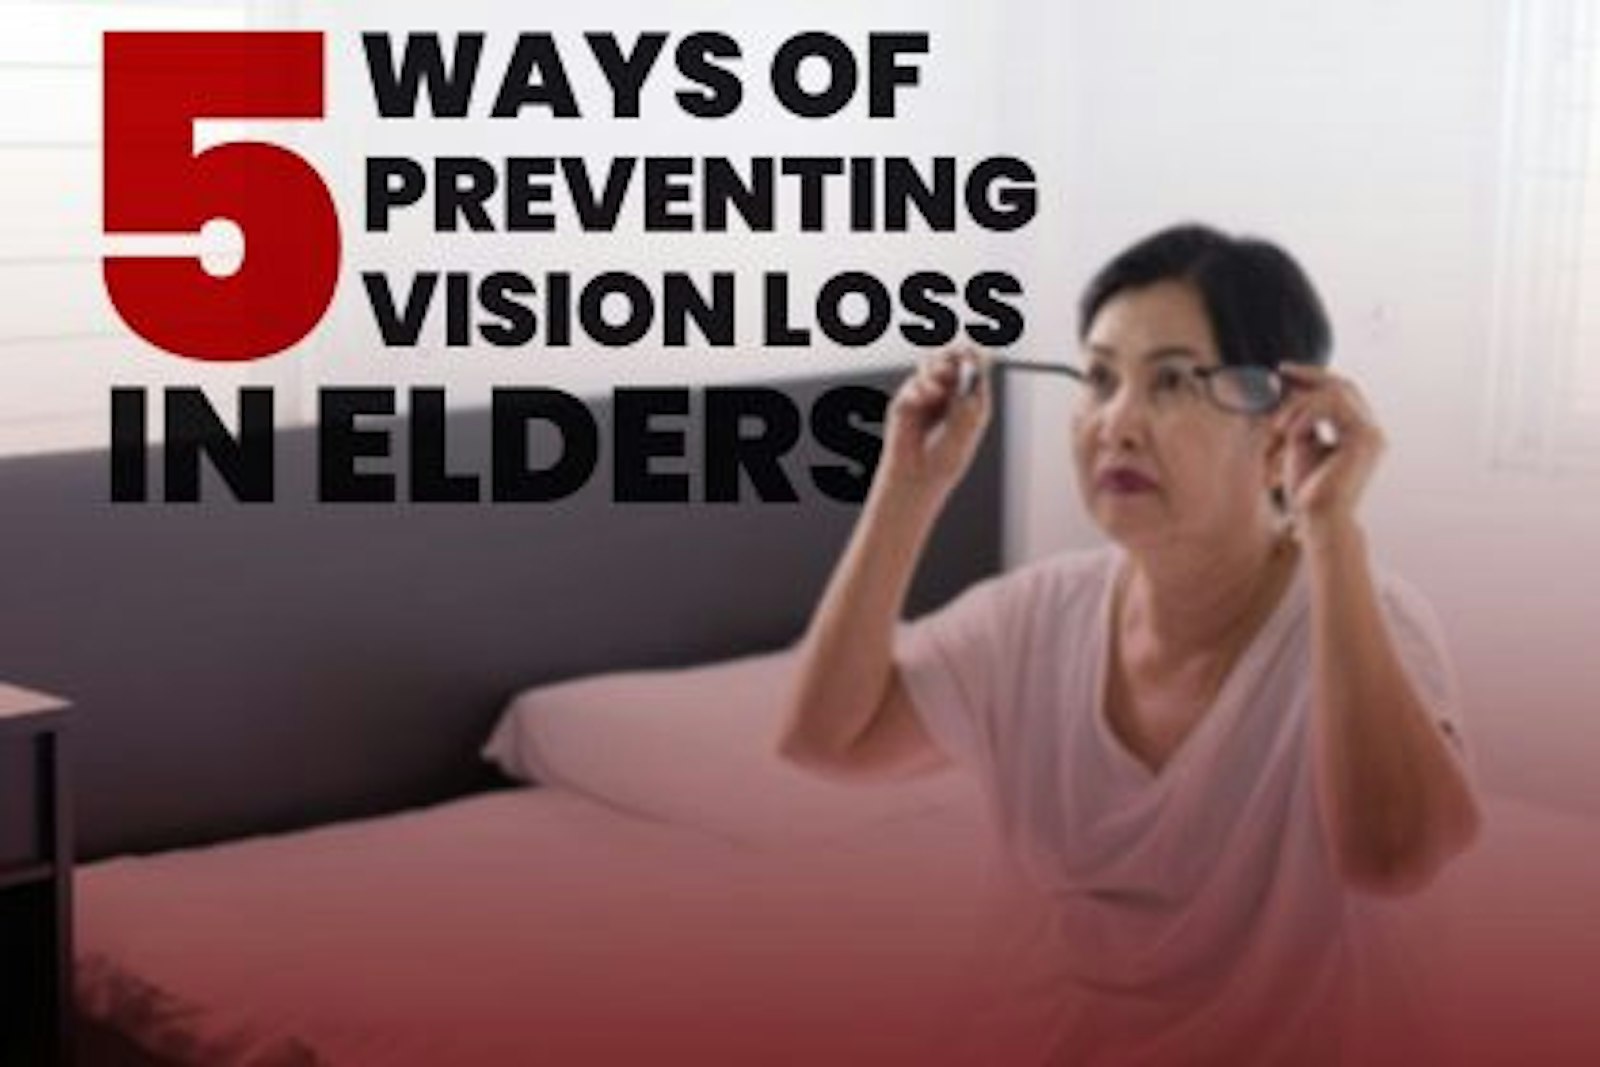 5 WAYS OF PREVENTING VISION LOSS IN ELDERS